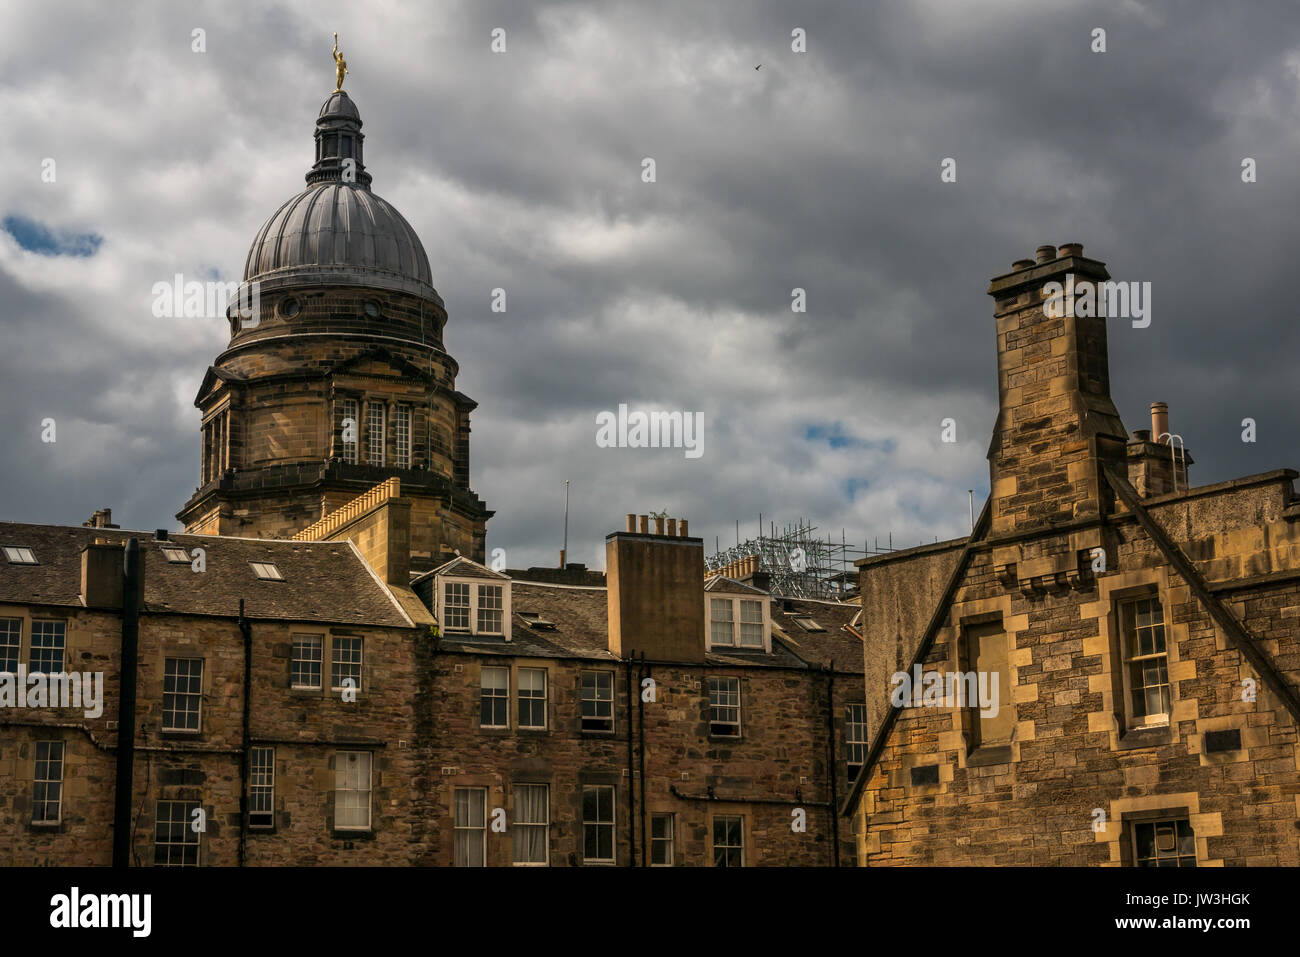 Haut de dôme Old College, Université d'Édimbourg en Figure de la jeunesse d'ornement doré statue, bâtiments et ciel dramatique, Ecosse, Royaume-Uni Banque D'Images